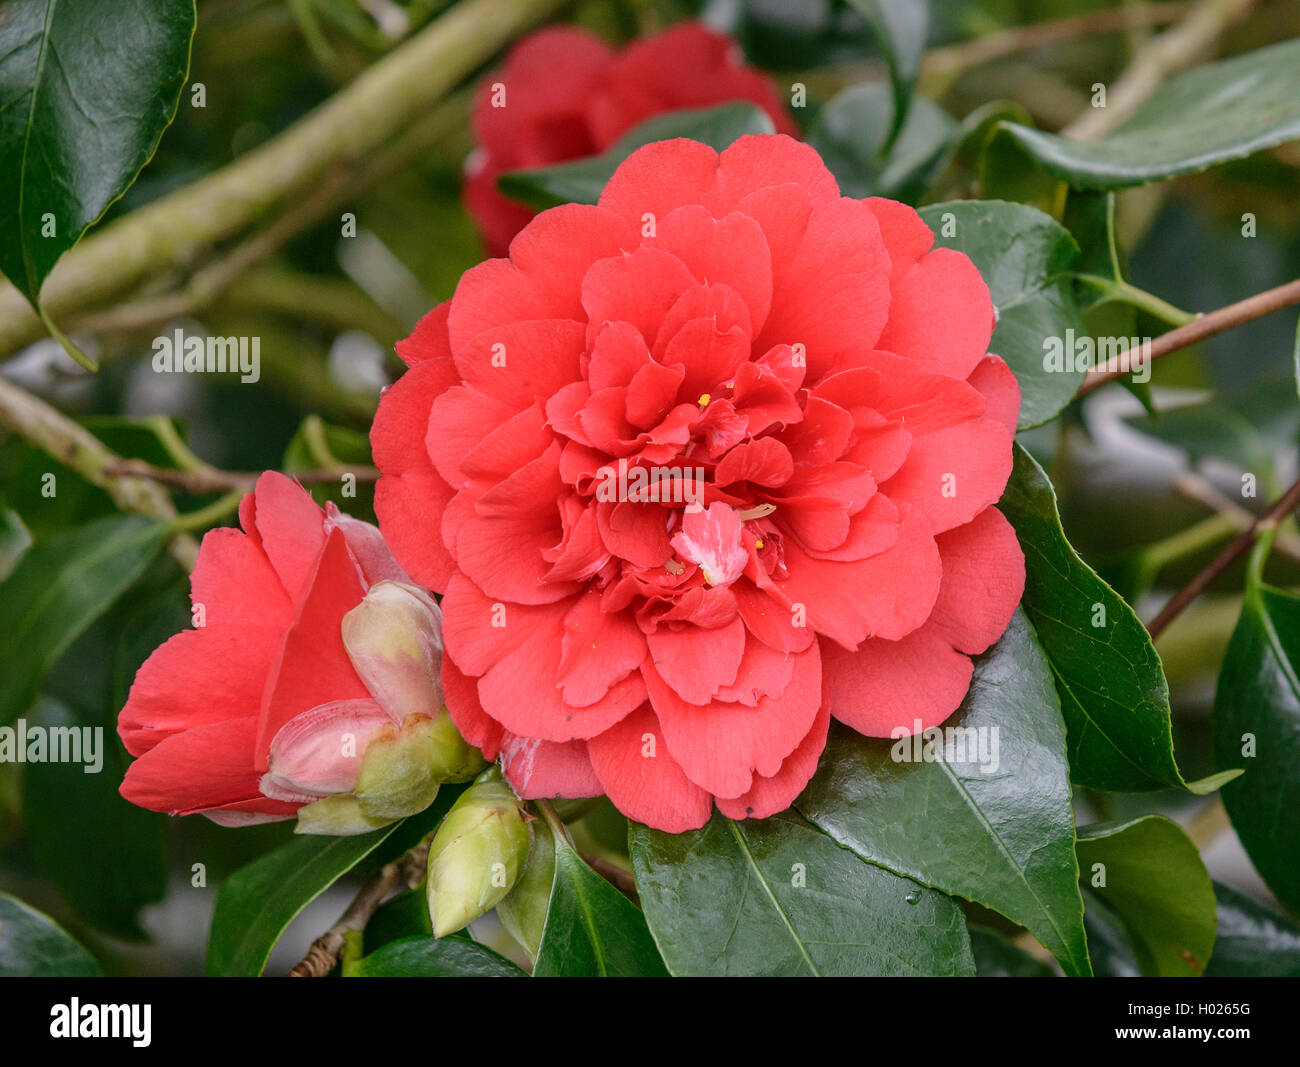 Japanische Kamelie (Camellia japonica 'Althaeiflora', Camellia japonica), Sorte Althaeiflora Althaeiflora Stockfoto